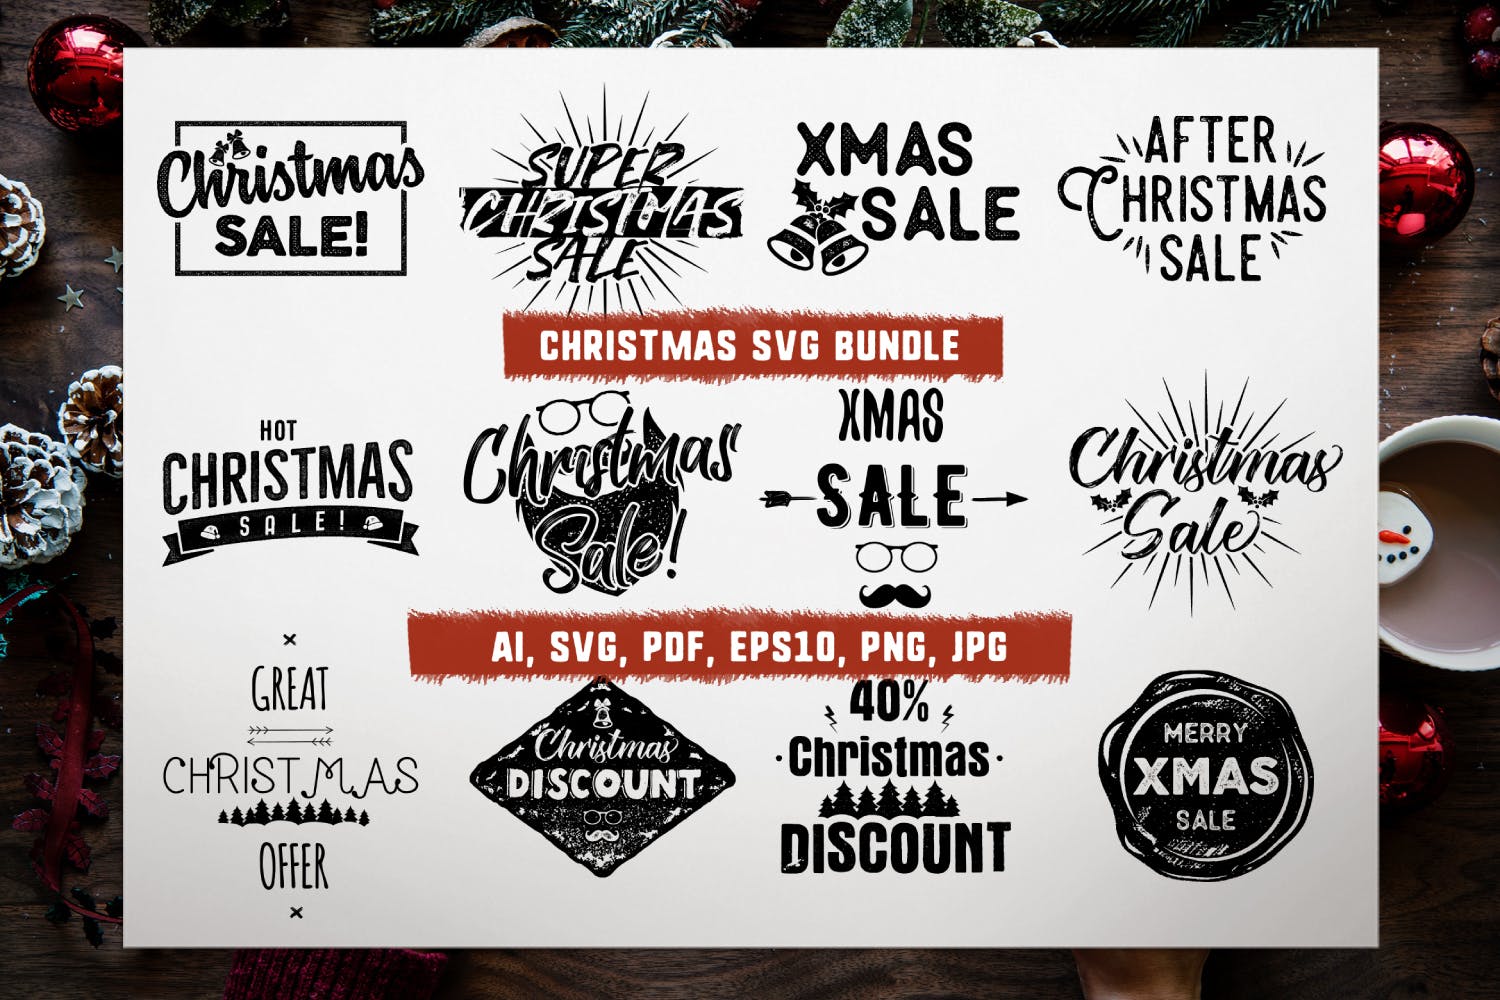 圣诞节主题设计素材包[1.07GB] Christmas Designs Mega Bundle, Retro Xmas Designs插图(14)